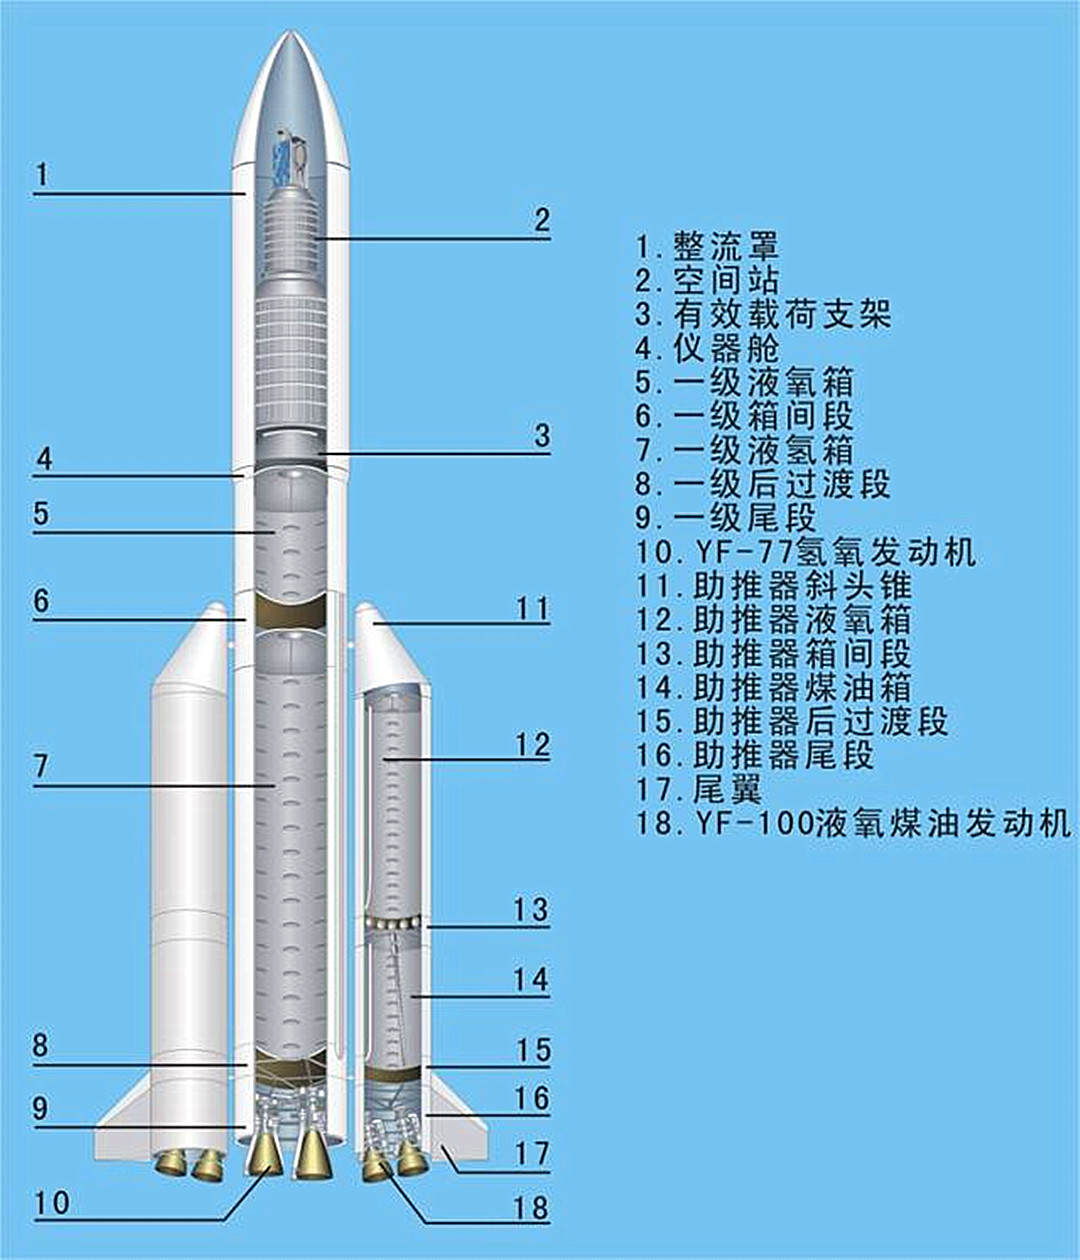 为什么中国长征火箭不可以像美国星舰那样使用金属本色?